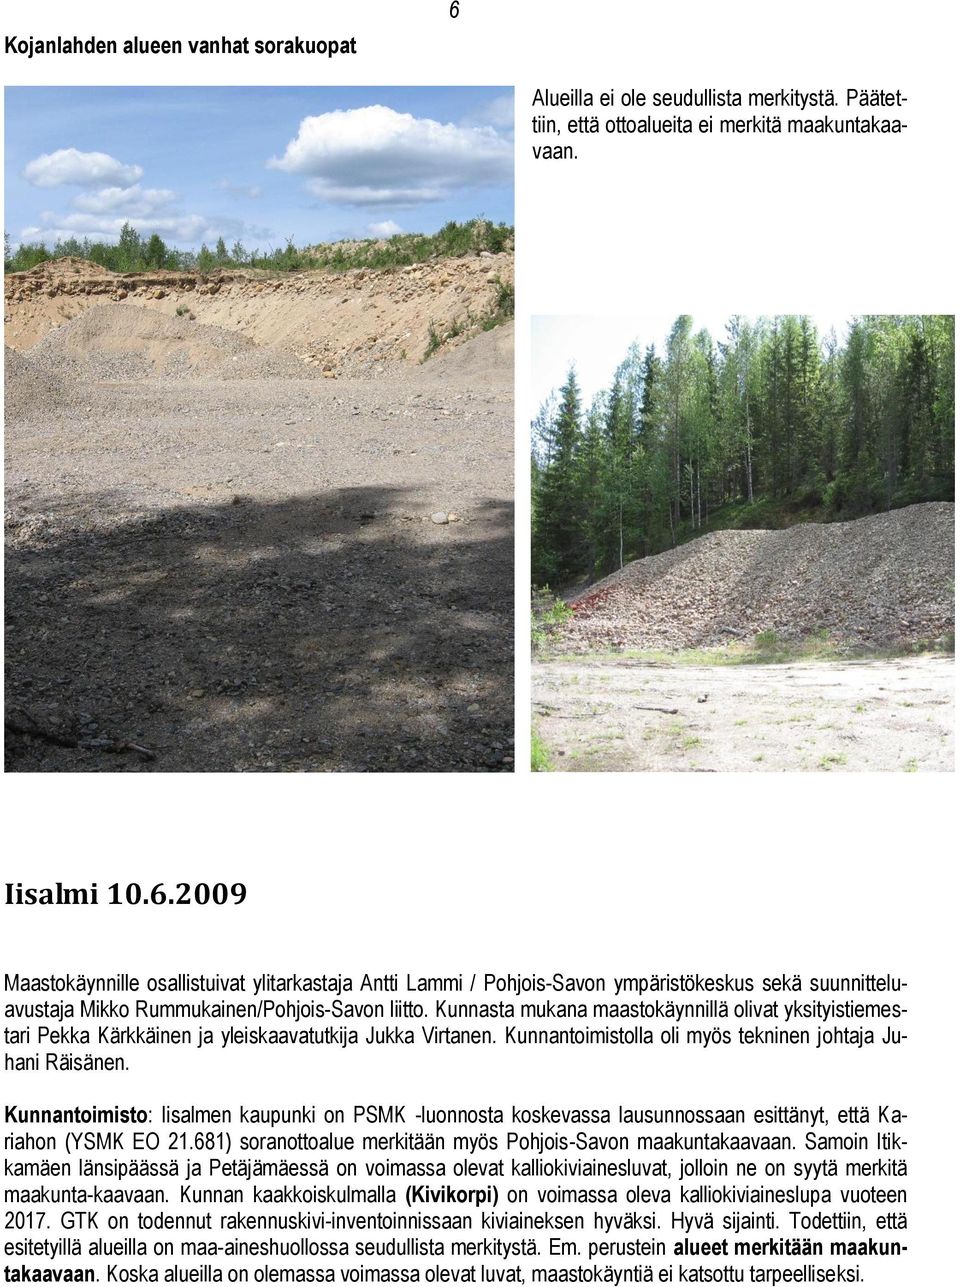 Kunnantoimisto: Iisalmen kaupunki on PSMK -luonnosta koskevassa lausunnossaan esittänyt, että Kariahon (YSMK EO 21.681) soranottoalue merkitään myös Pohjois-Savon maakuntakaavaan.